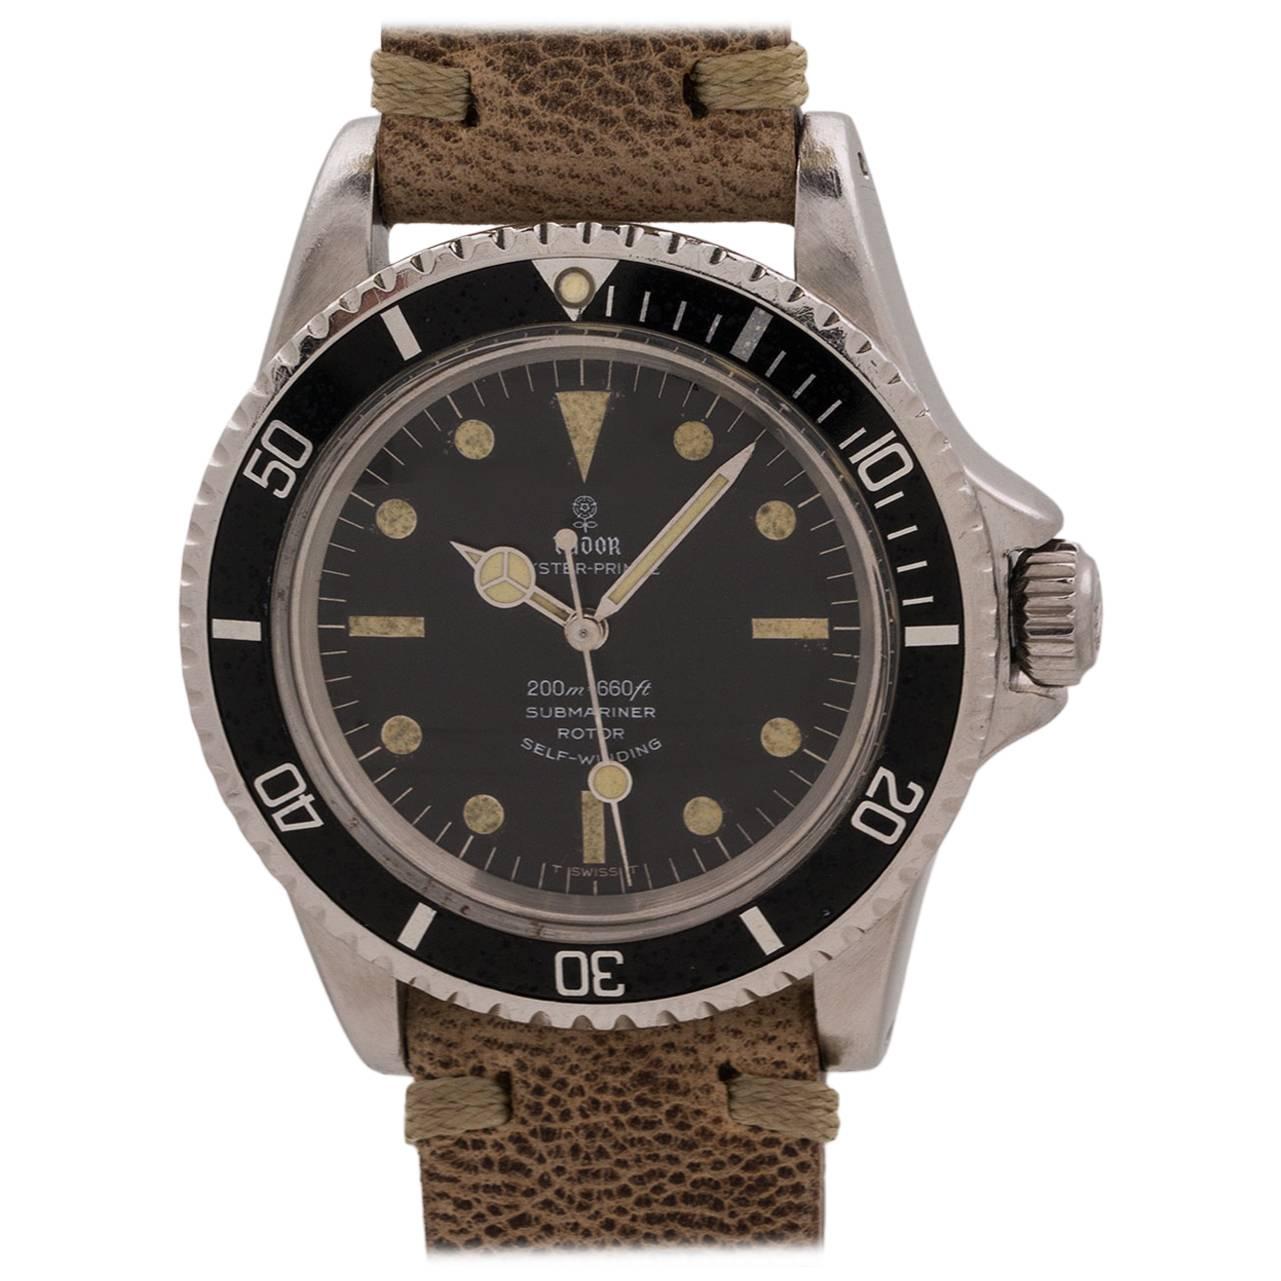 Tudor Stainless Steel Submariner Wristwatch Ref 7928